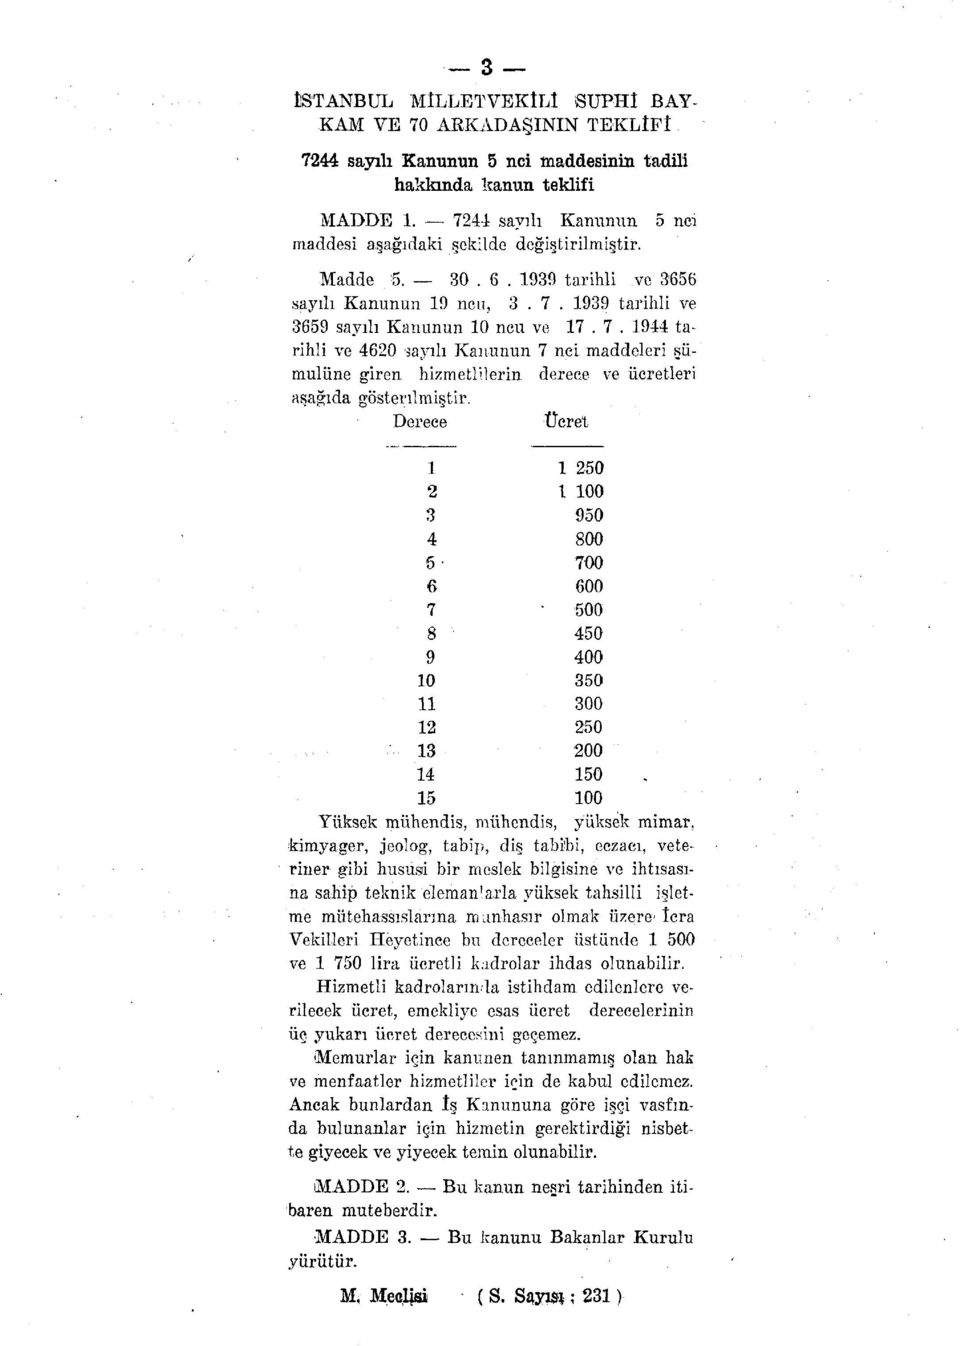 1944 tarihli ve 4620 sayılı Kanunun 7 nci maddeleri şümulüne giren hizmetlilerin derece ve ücretleri aşağıda gösterilmiştir.